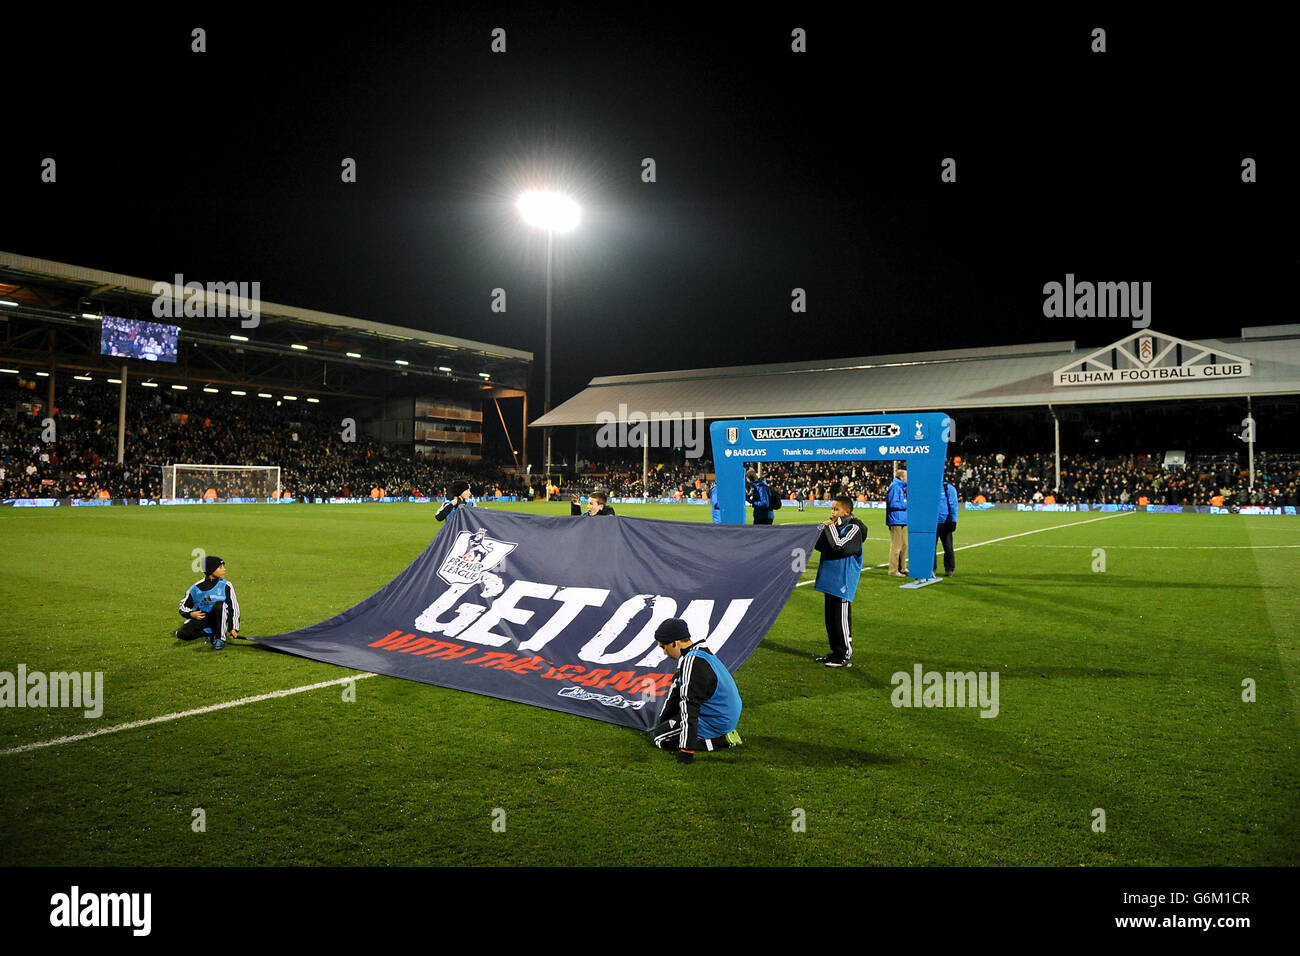 Football - Barclays Premier League - Fulham / Tottenham Hotspur - Craven Cottage. Les mascottes sont dotées d'un panneau indiquant « Get On with the Game » Banque D'Images